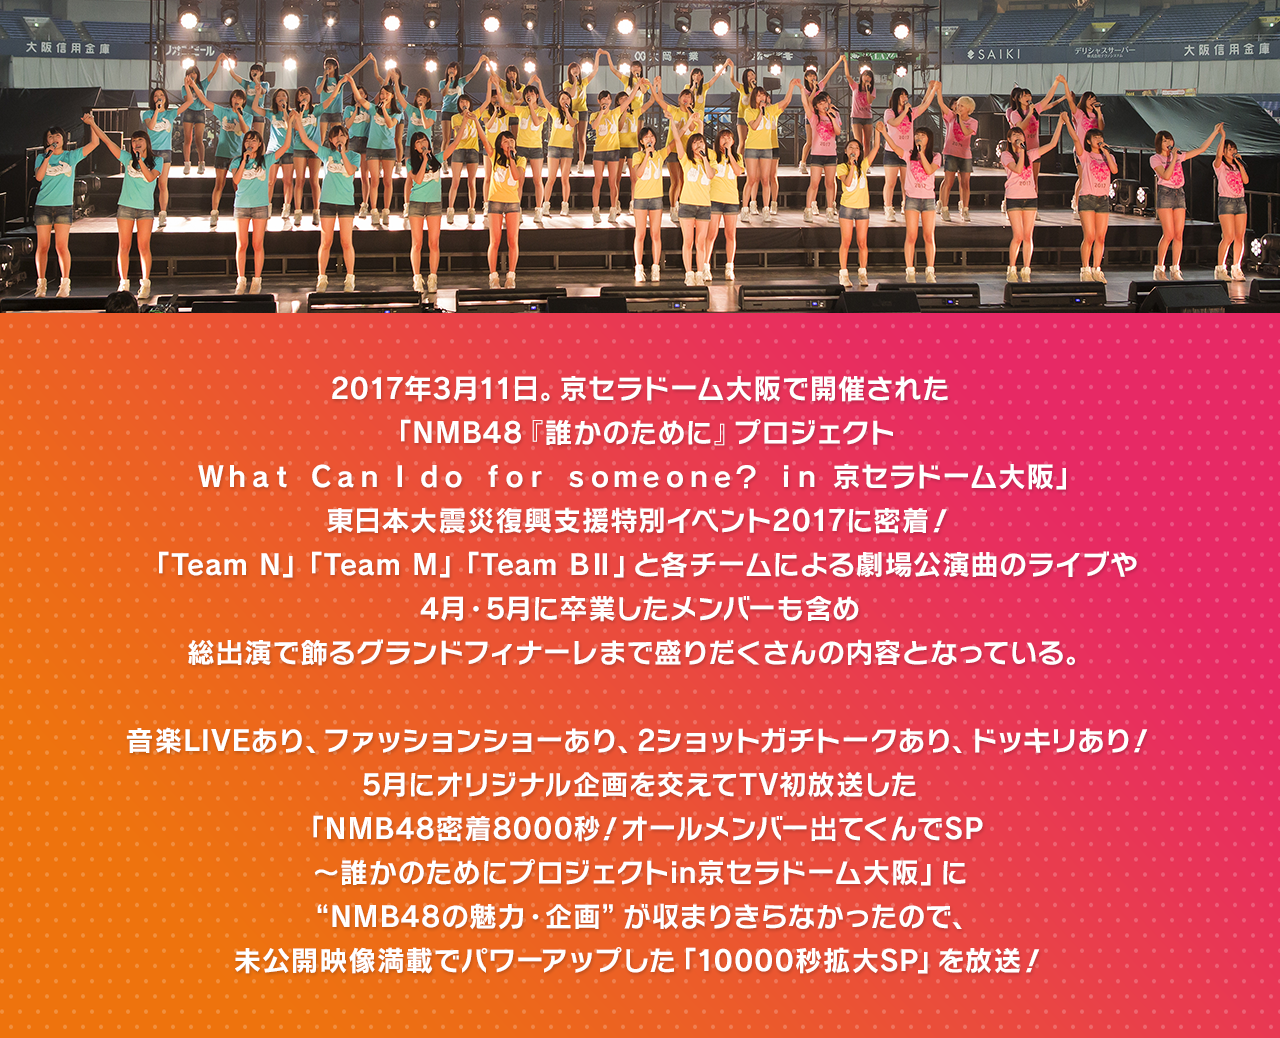 2017年3月11日。京セラドーム大阪で開催された「NMB48 誰かのためにプロジェクト」。